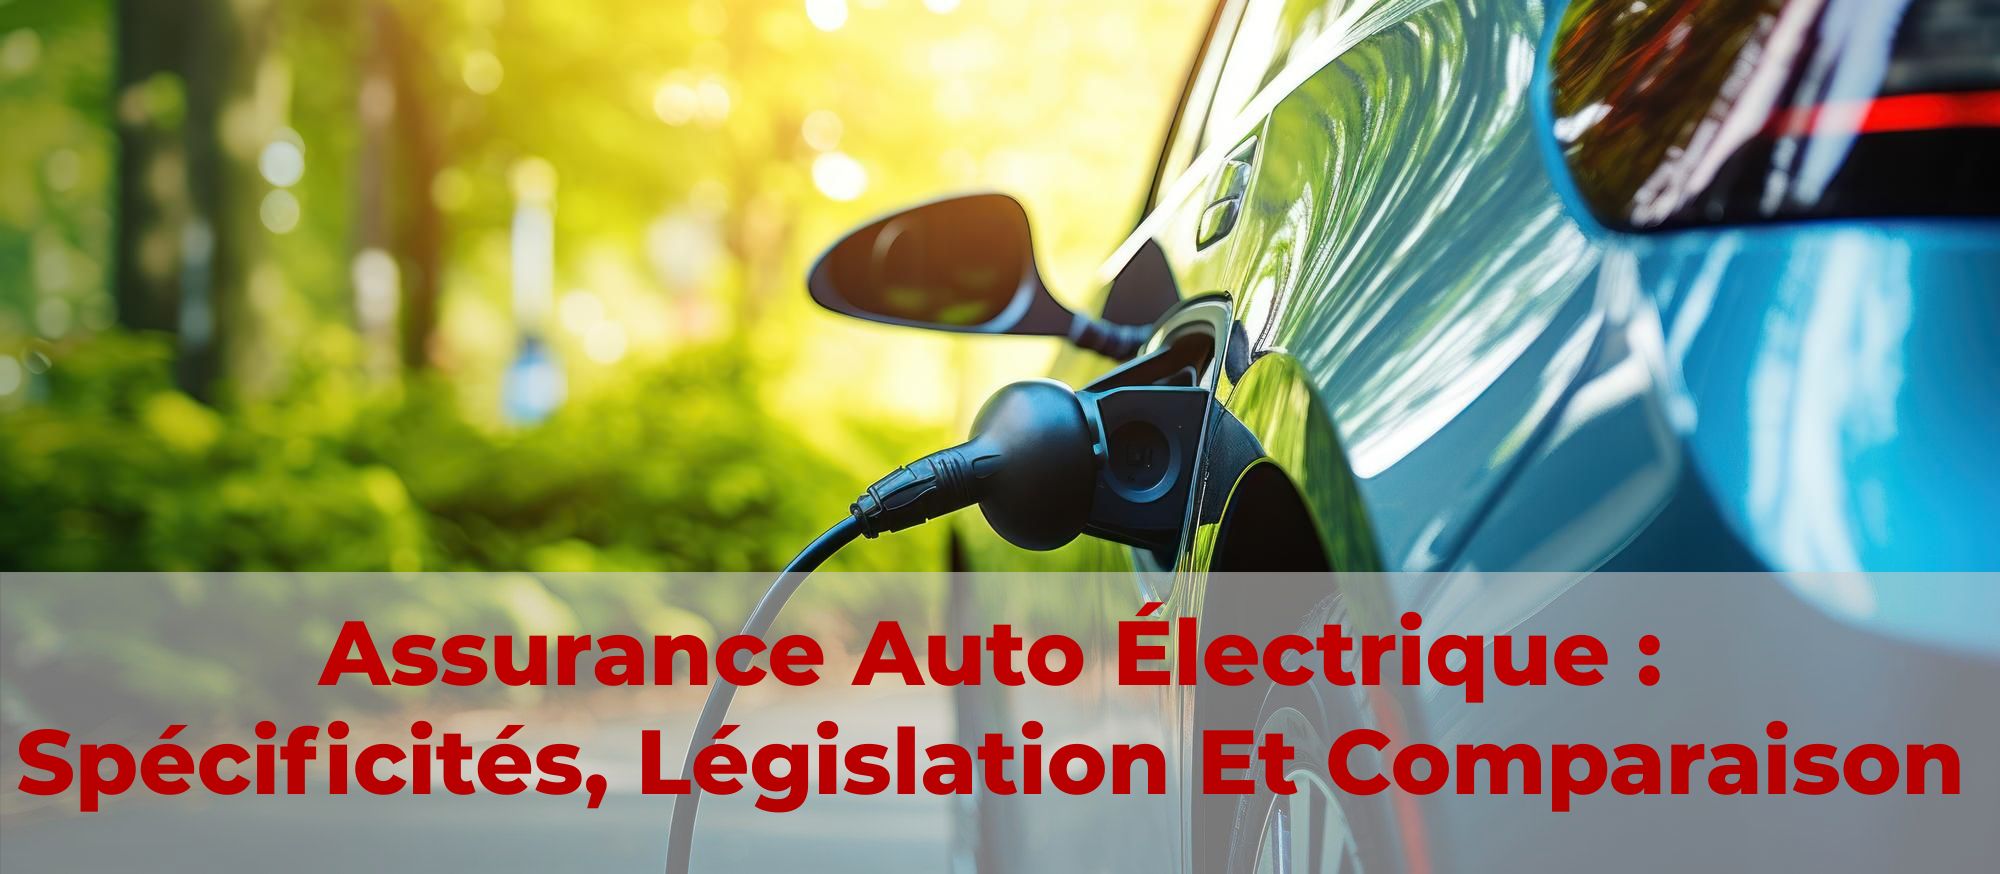 Assurance pour les conducteurs de véhicules électriques